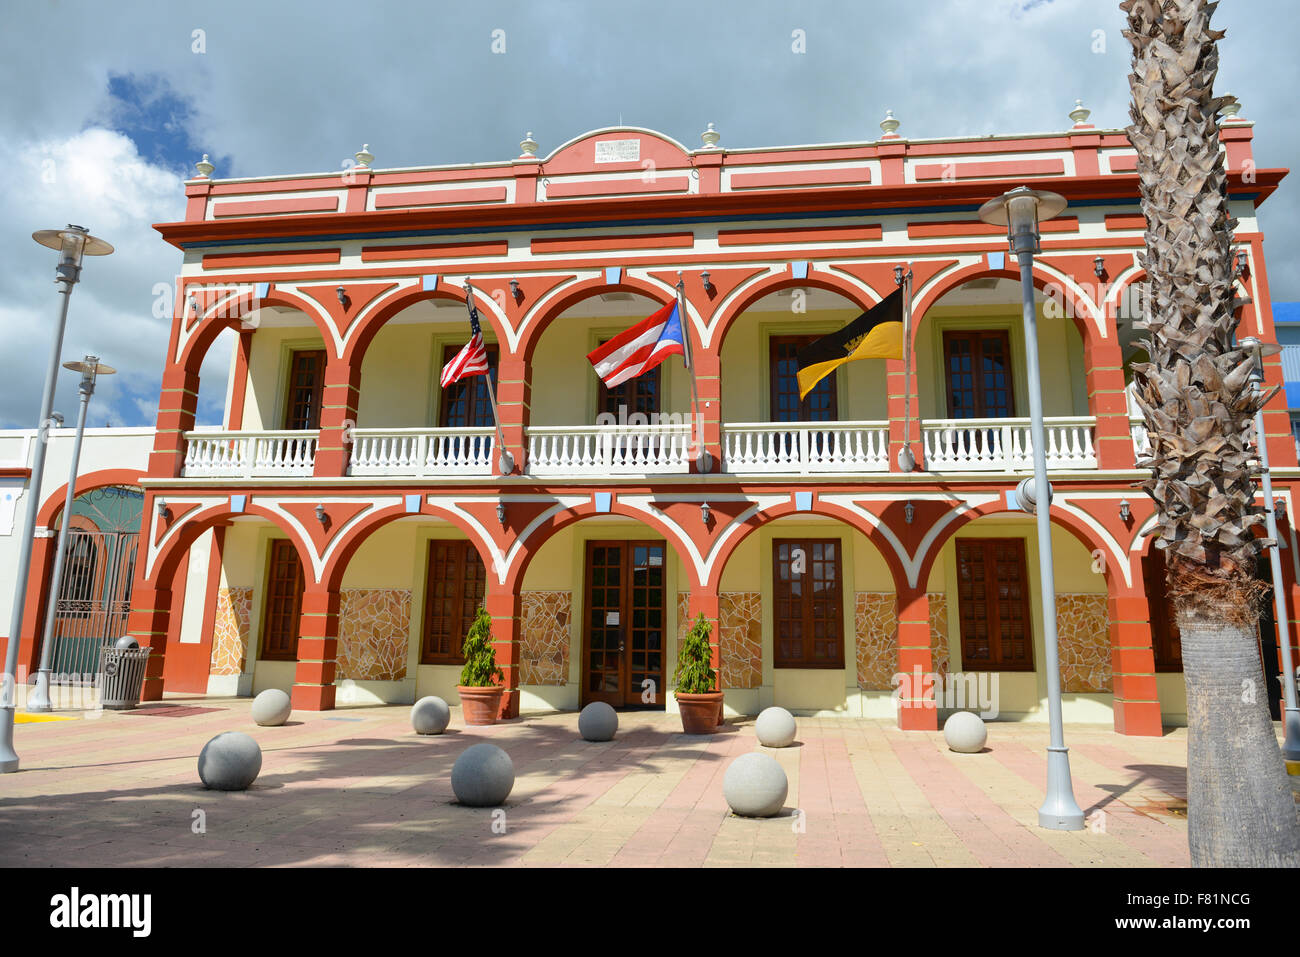 City Hall (Casa Alcadia) of the town of Yauco, Puerto Rico. USA territory. Caribbean Island. Stock Photo